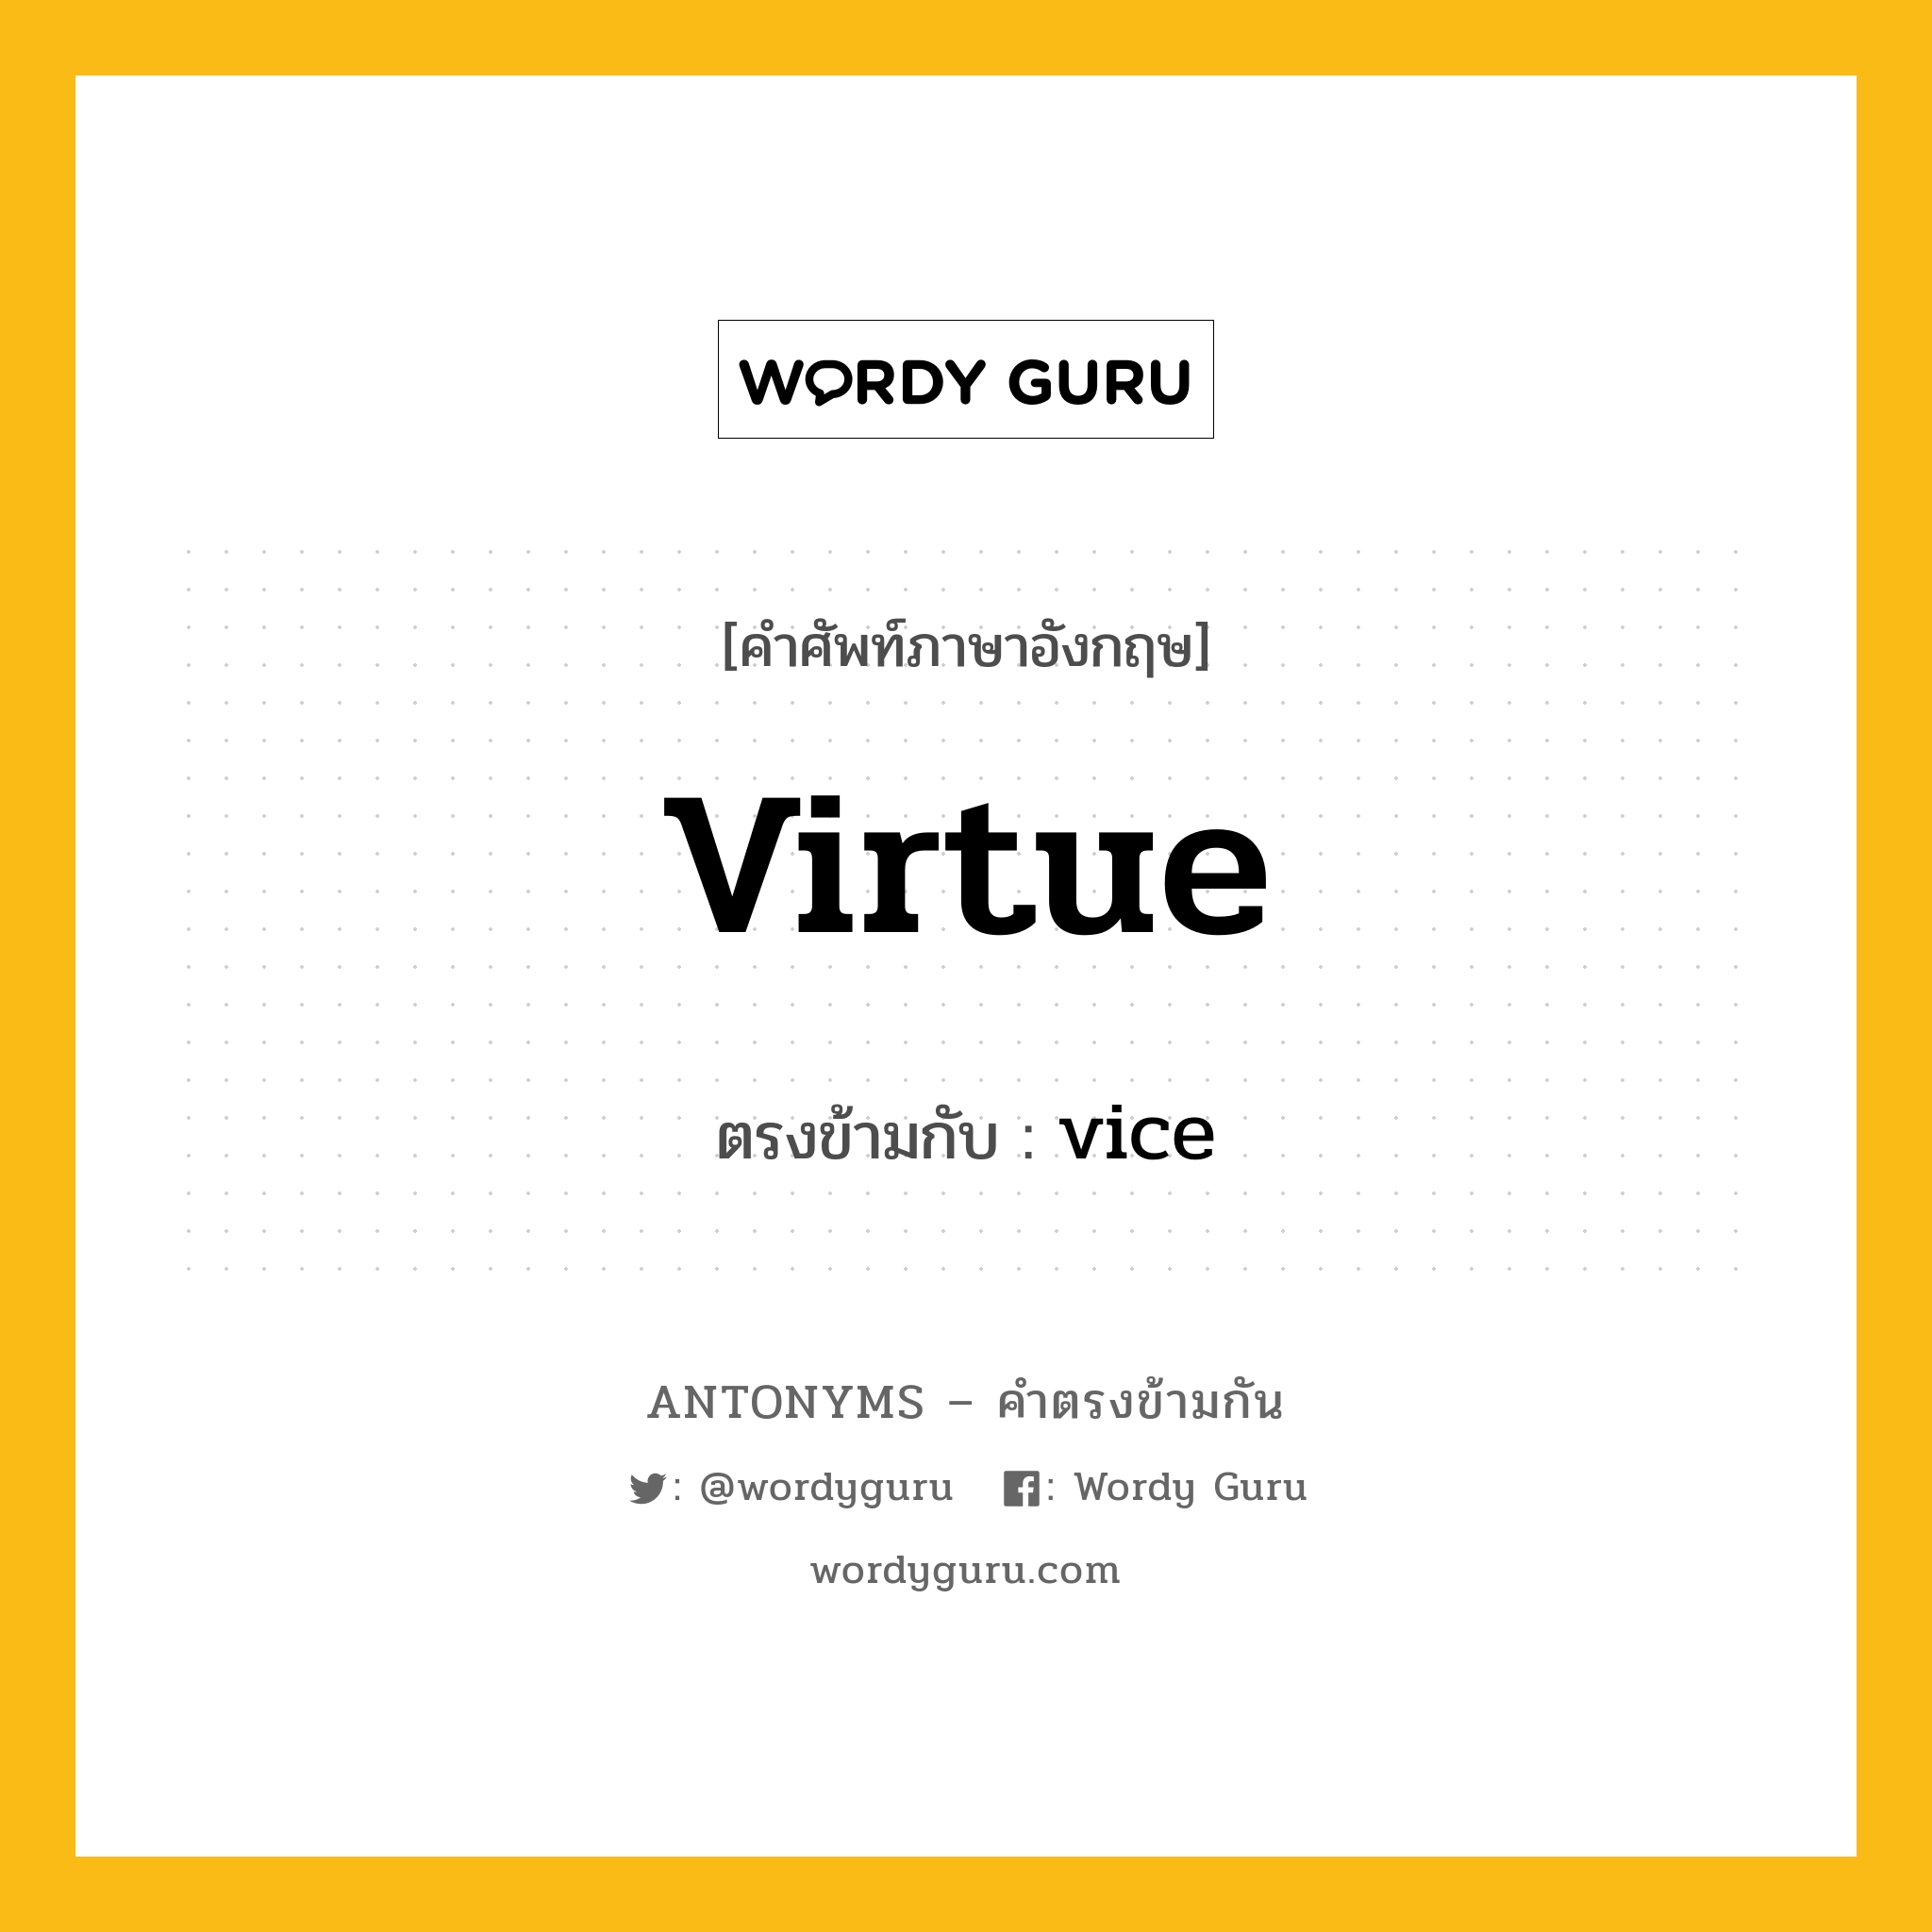 virtue เป็นคำตรงข้ามกับคำไหนบ้าง?, คำศัพท์ภาษาอังกฤษ virtue ตรงข้ามกับ vice หมวด vice